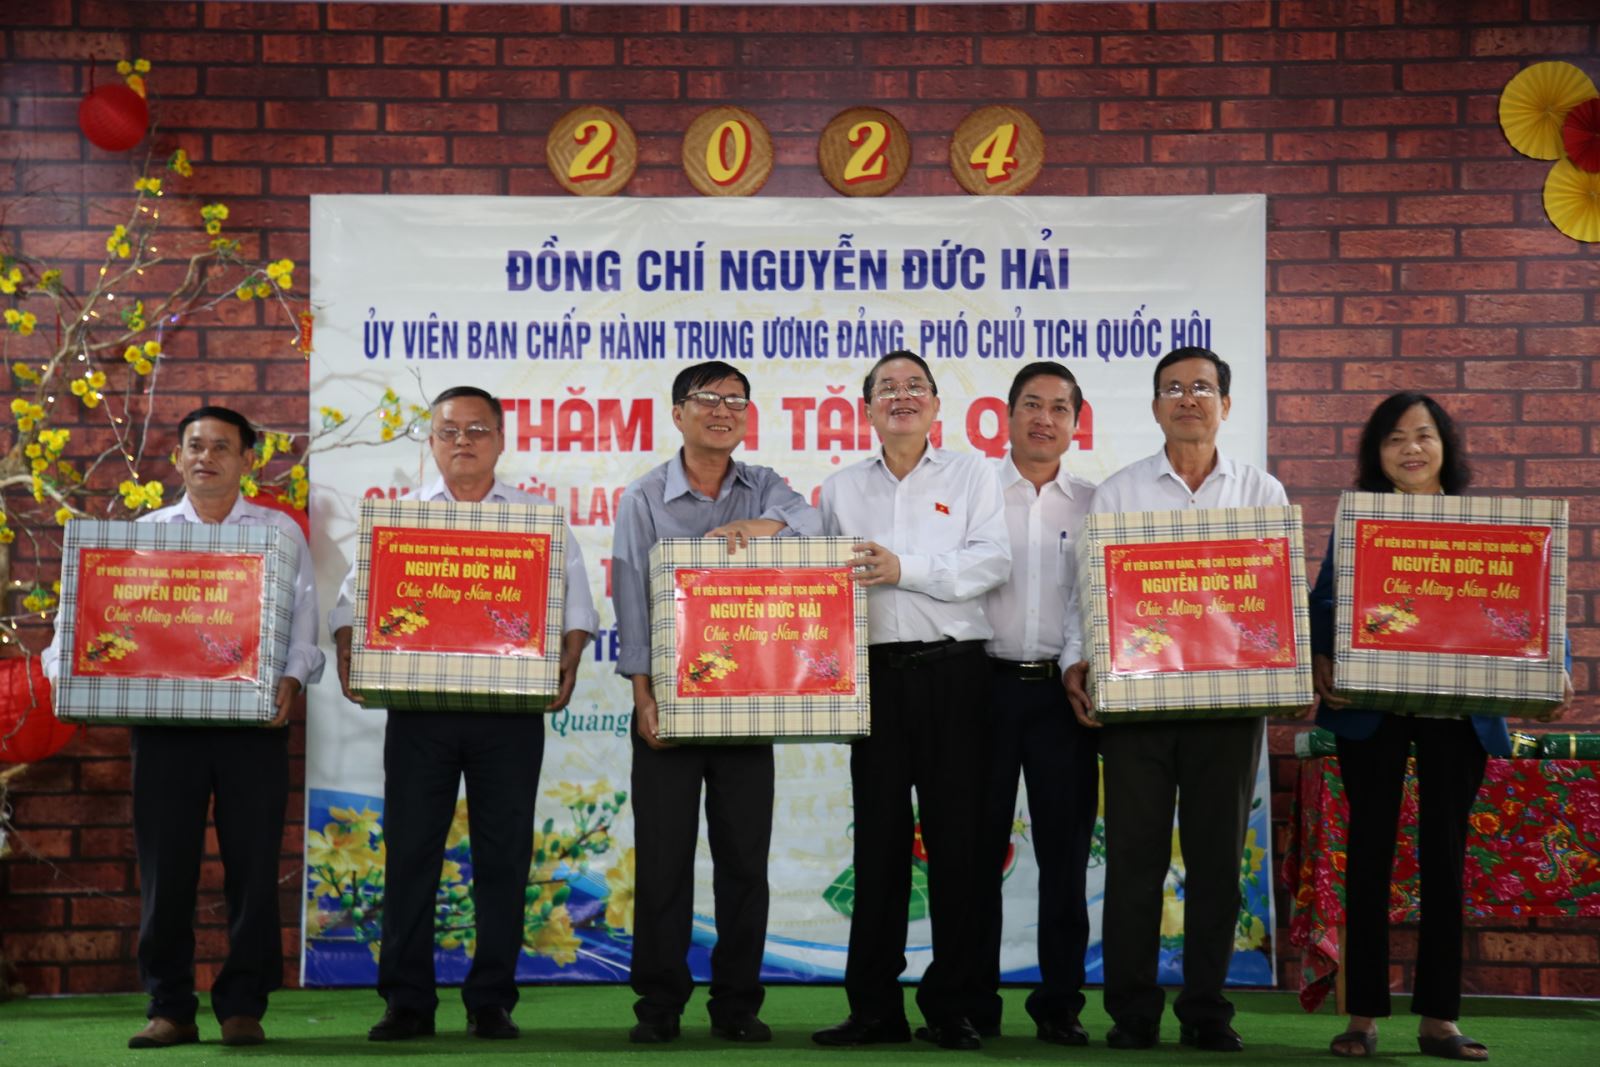 Phó Chủ tịch Quốc hội Nguyễn Đức Hải trao quà cho các đại diện Trung tâm bảo trợ xã hội tại tỉnh Quảng Nam (nguồn: Báo Quảng Nam)